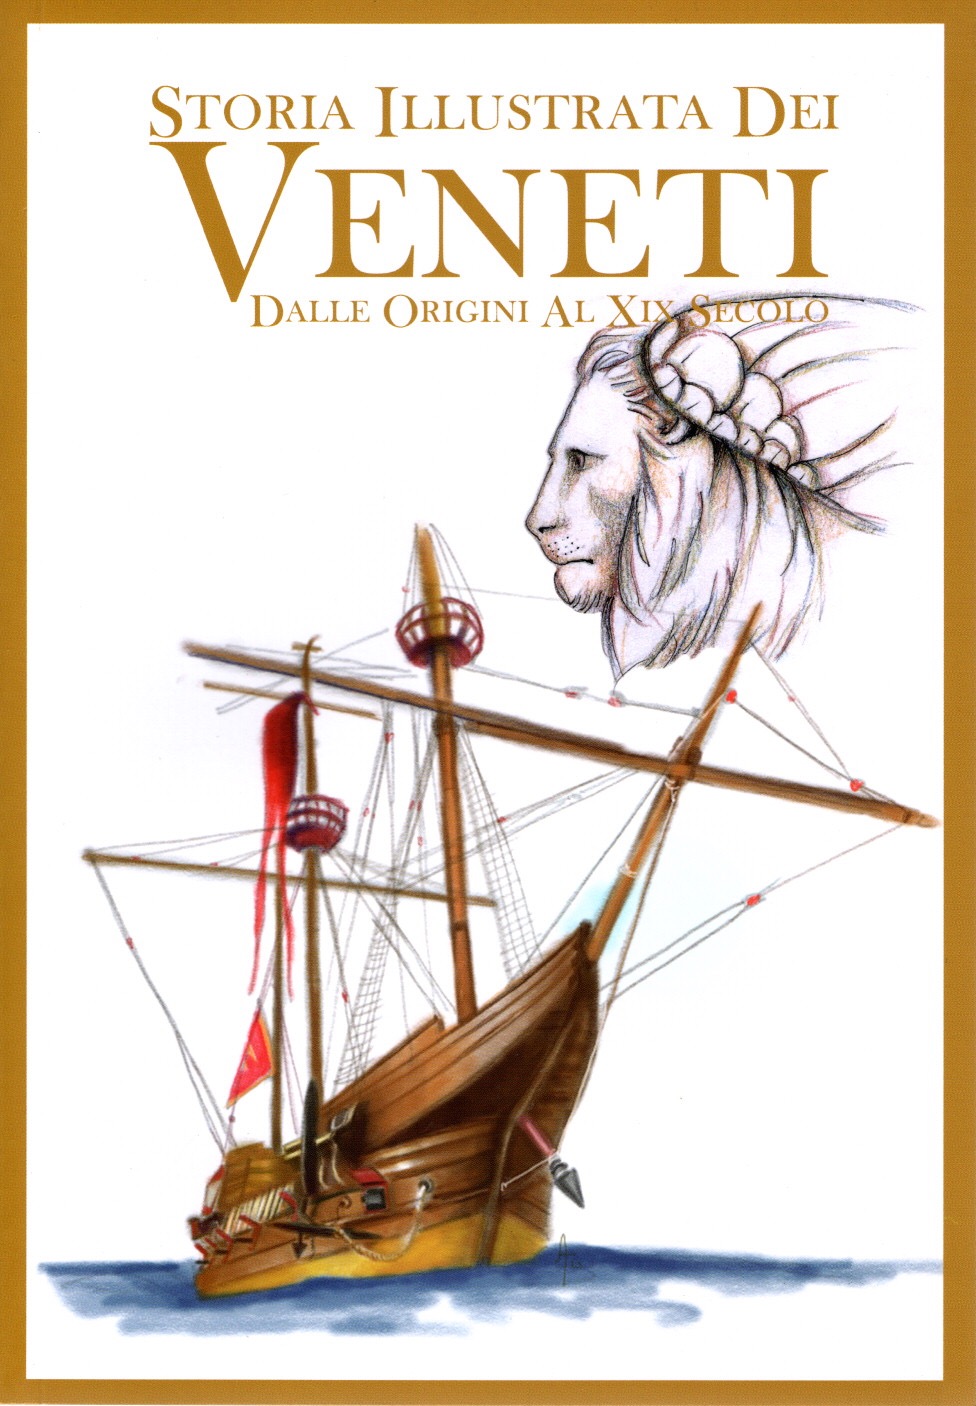 Storia illustrata dei veneti, dalle origini al XIX secolo